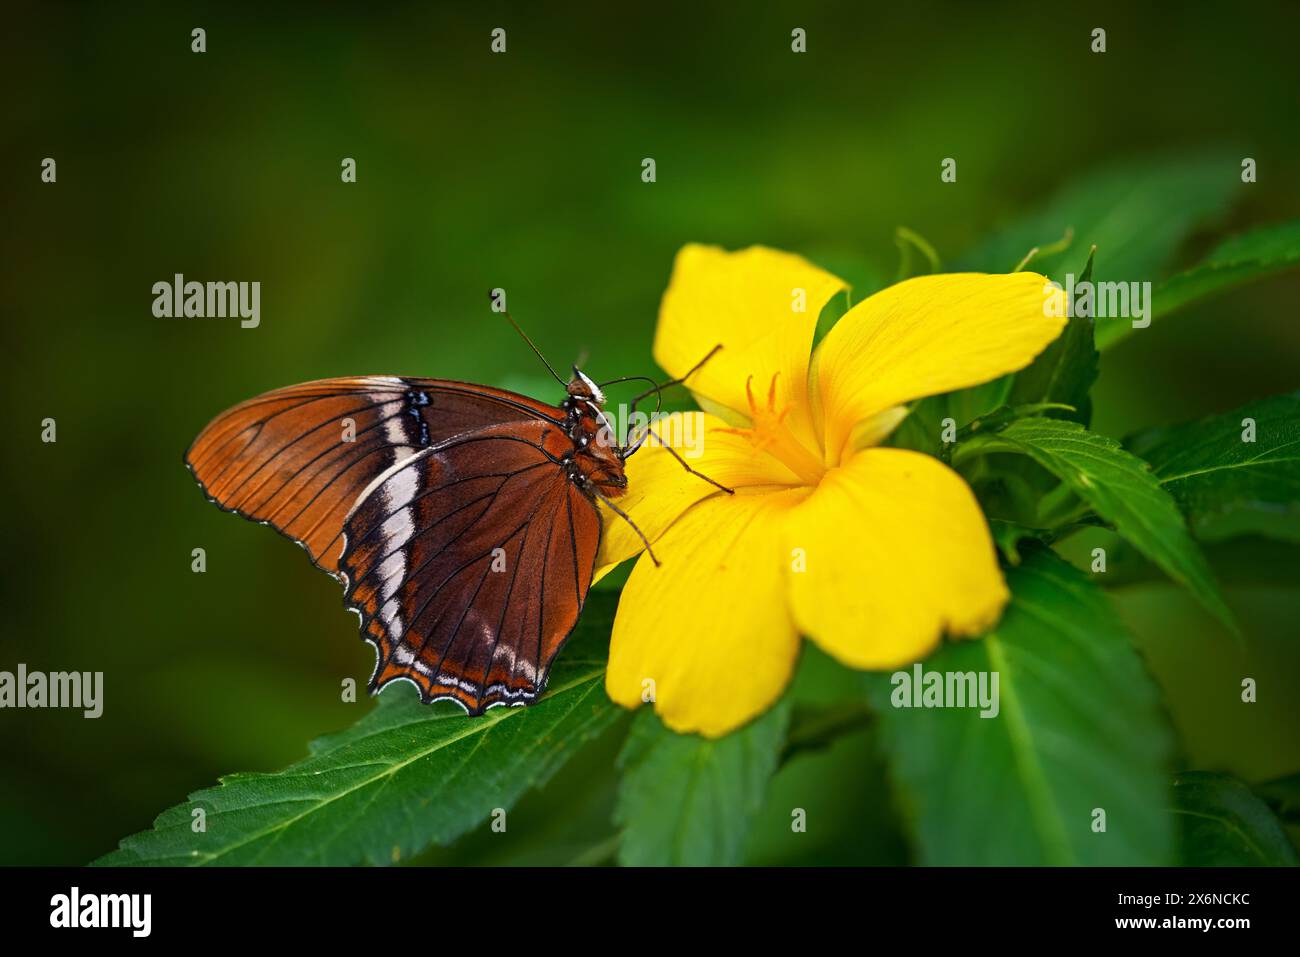 Rostbedeckte Seite, Siproeta epaphus, oranges Insekt auf Blütenblüte im natürlichen Lebensraum. Ein Schmetterling in Brasilien, Südamerika. Tierwelt Natur. Trop Stockfoto